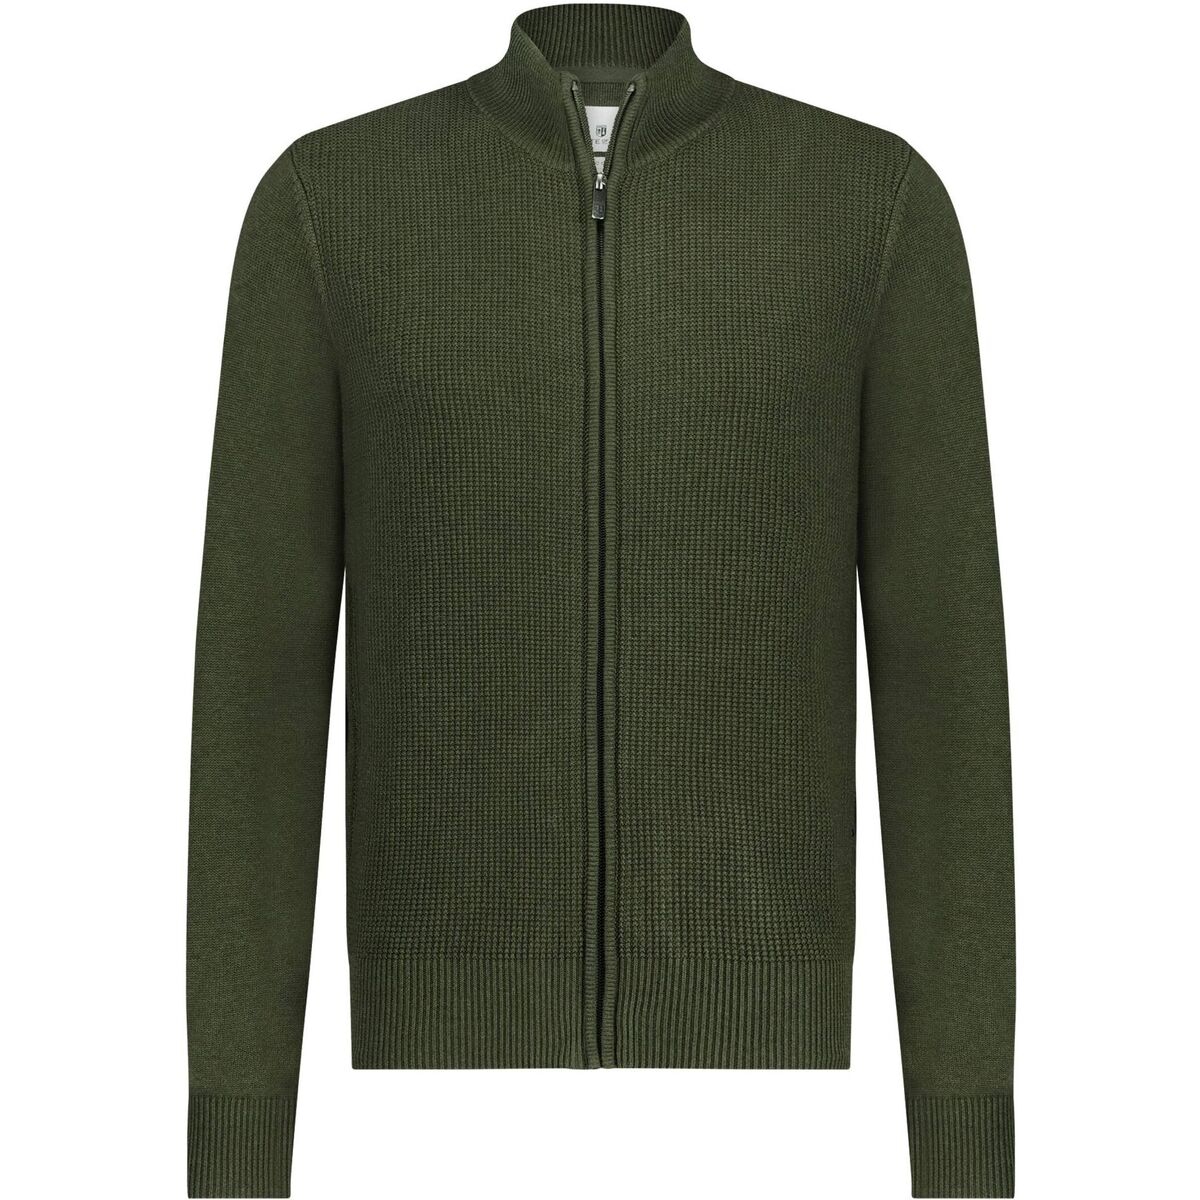 Textiel Heren Sweaters / Sweatshirts State Of Art Vest Zip Plain Donkergroen Groen